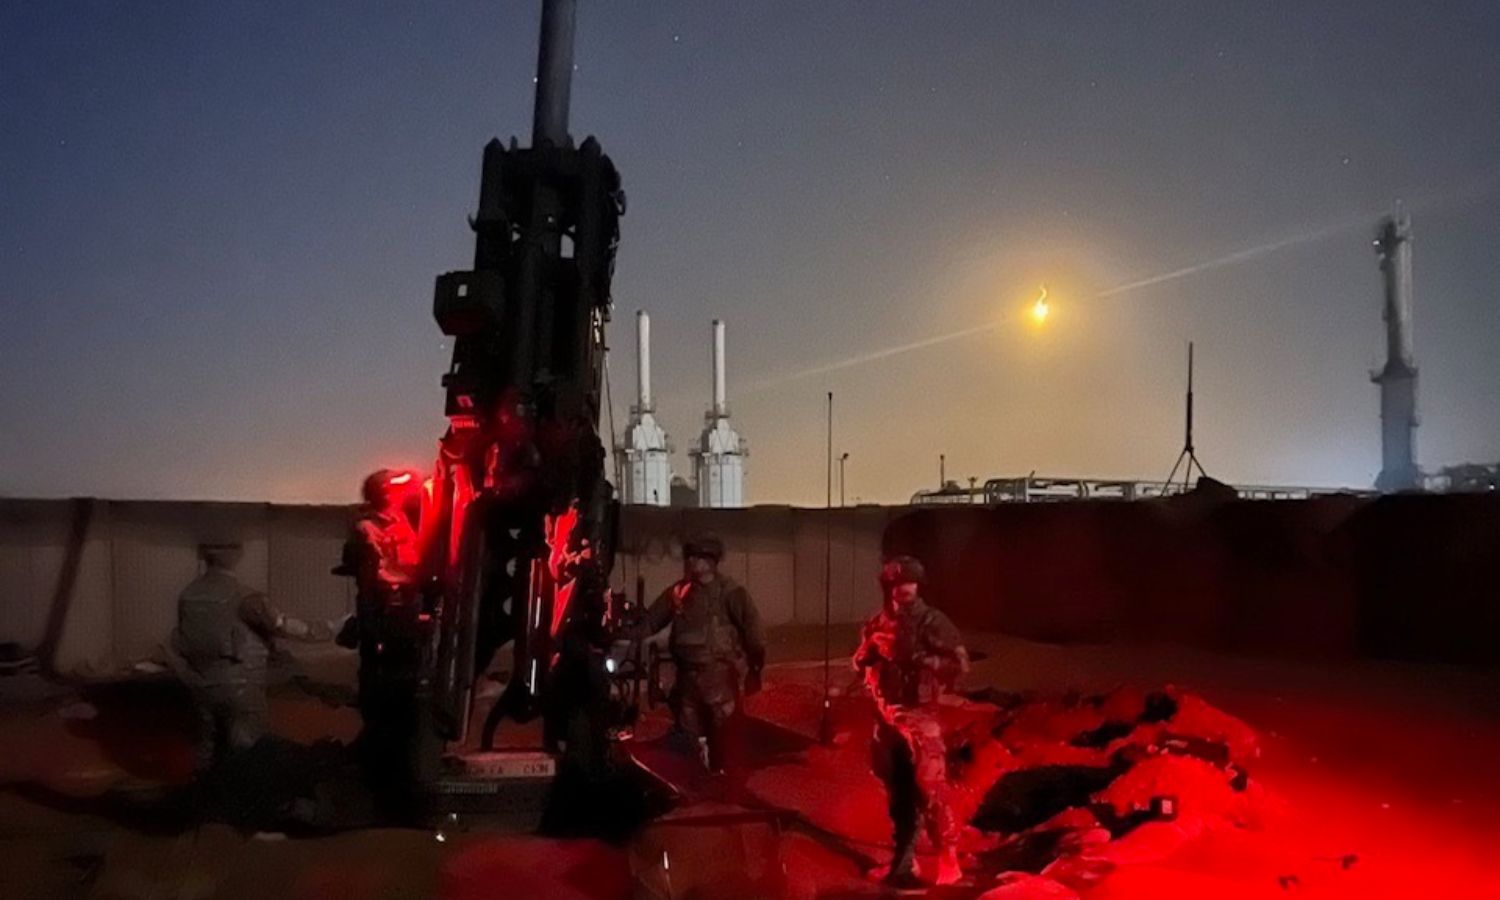 جنود من الجيش الأمريكي خلال تمرين تشغيلي على مدافع هاوترز الأمريكية شمال شرقي سوريا- 1 من كانون الثاني 2023 (سينتكوم)